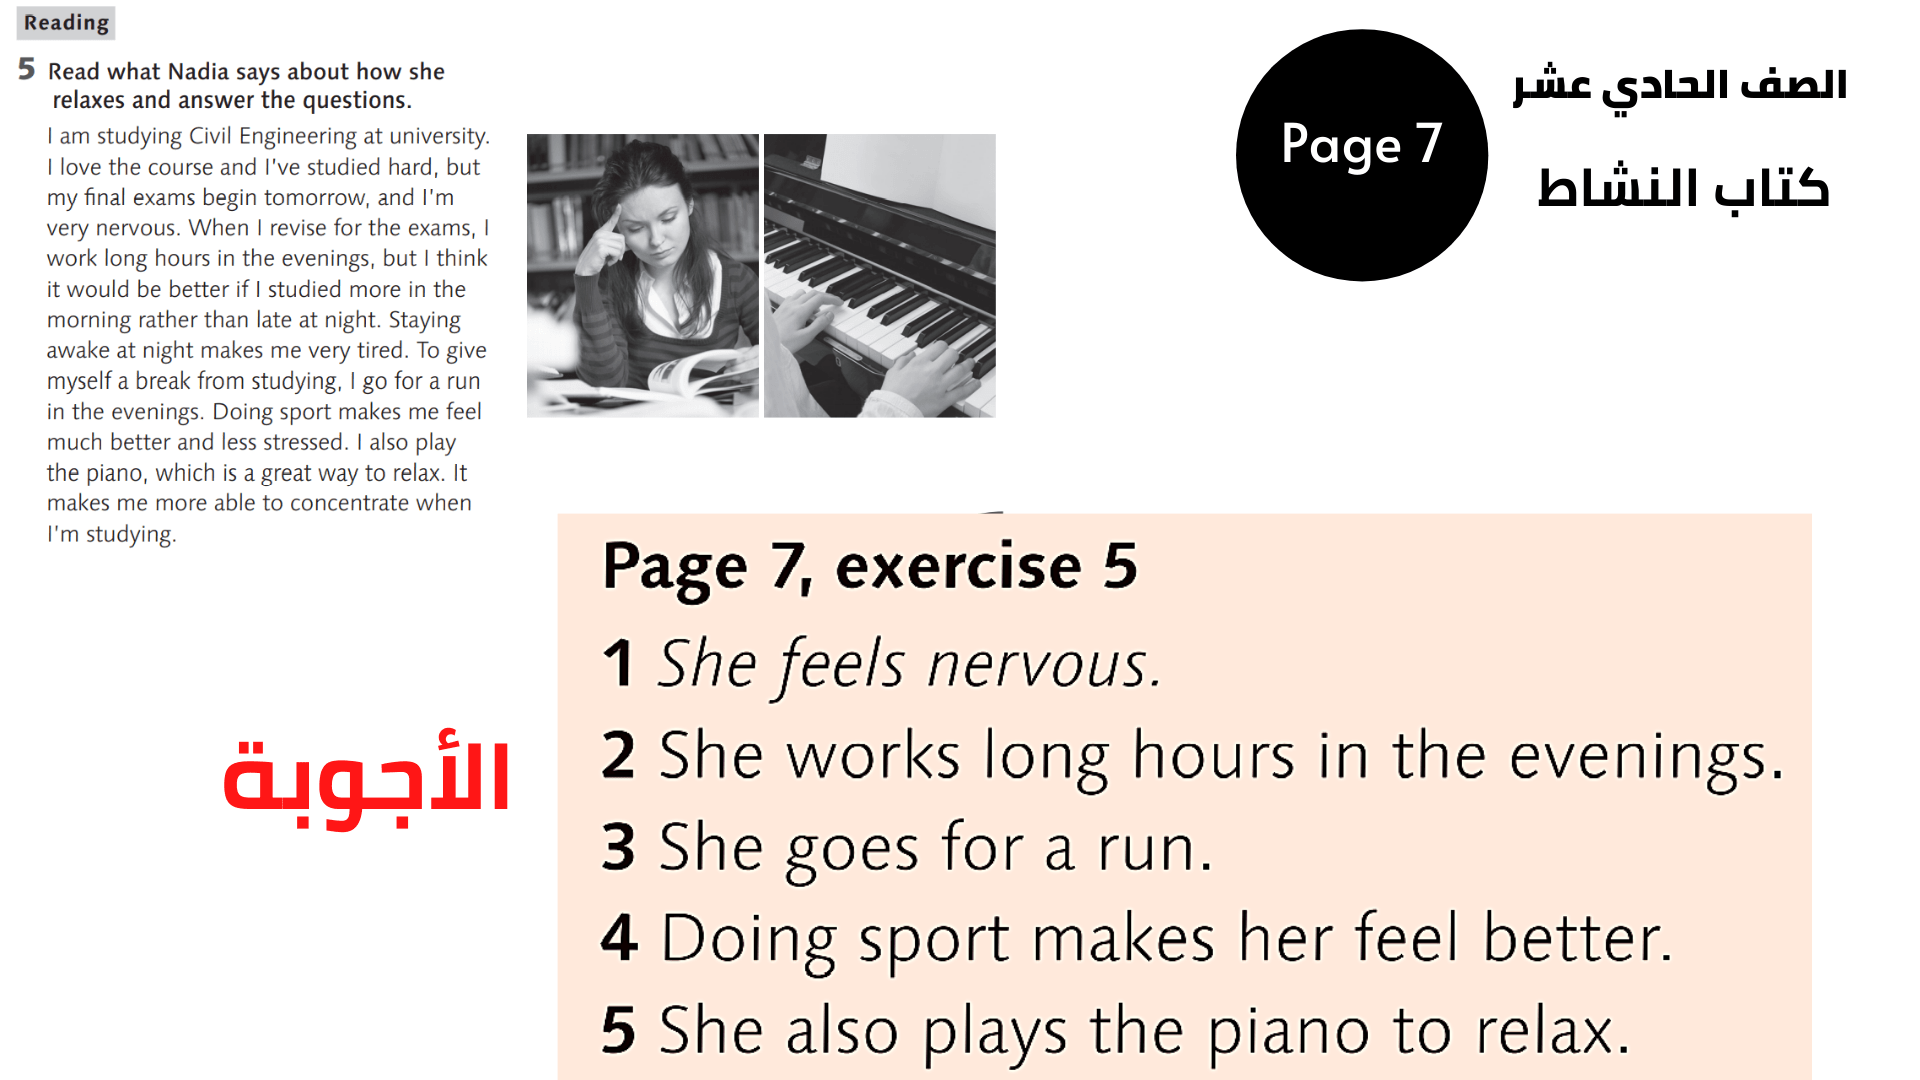 الصفحة 7 ، التمرين 5